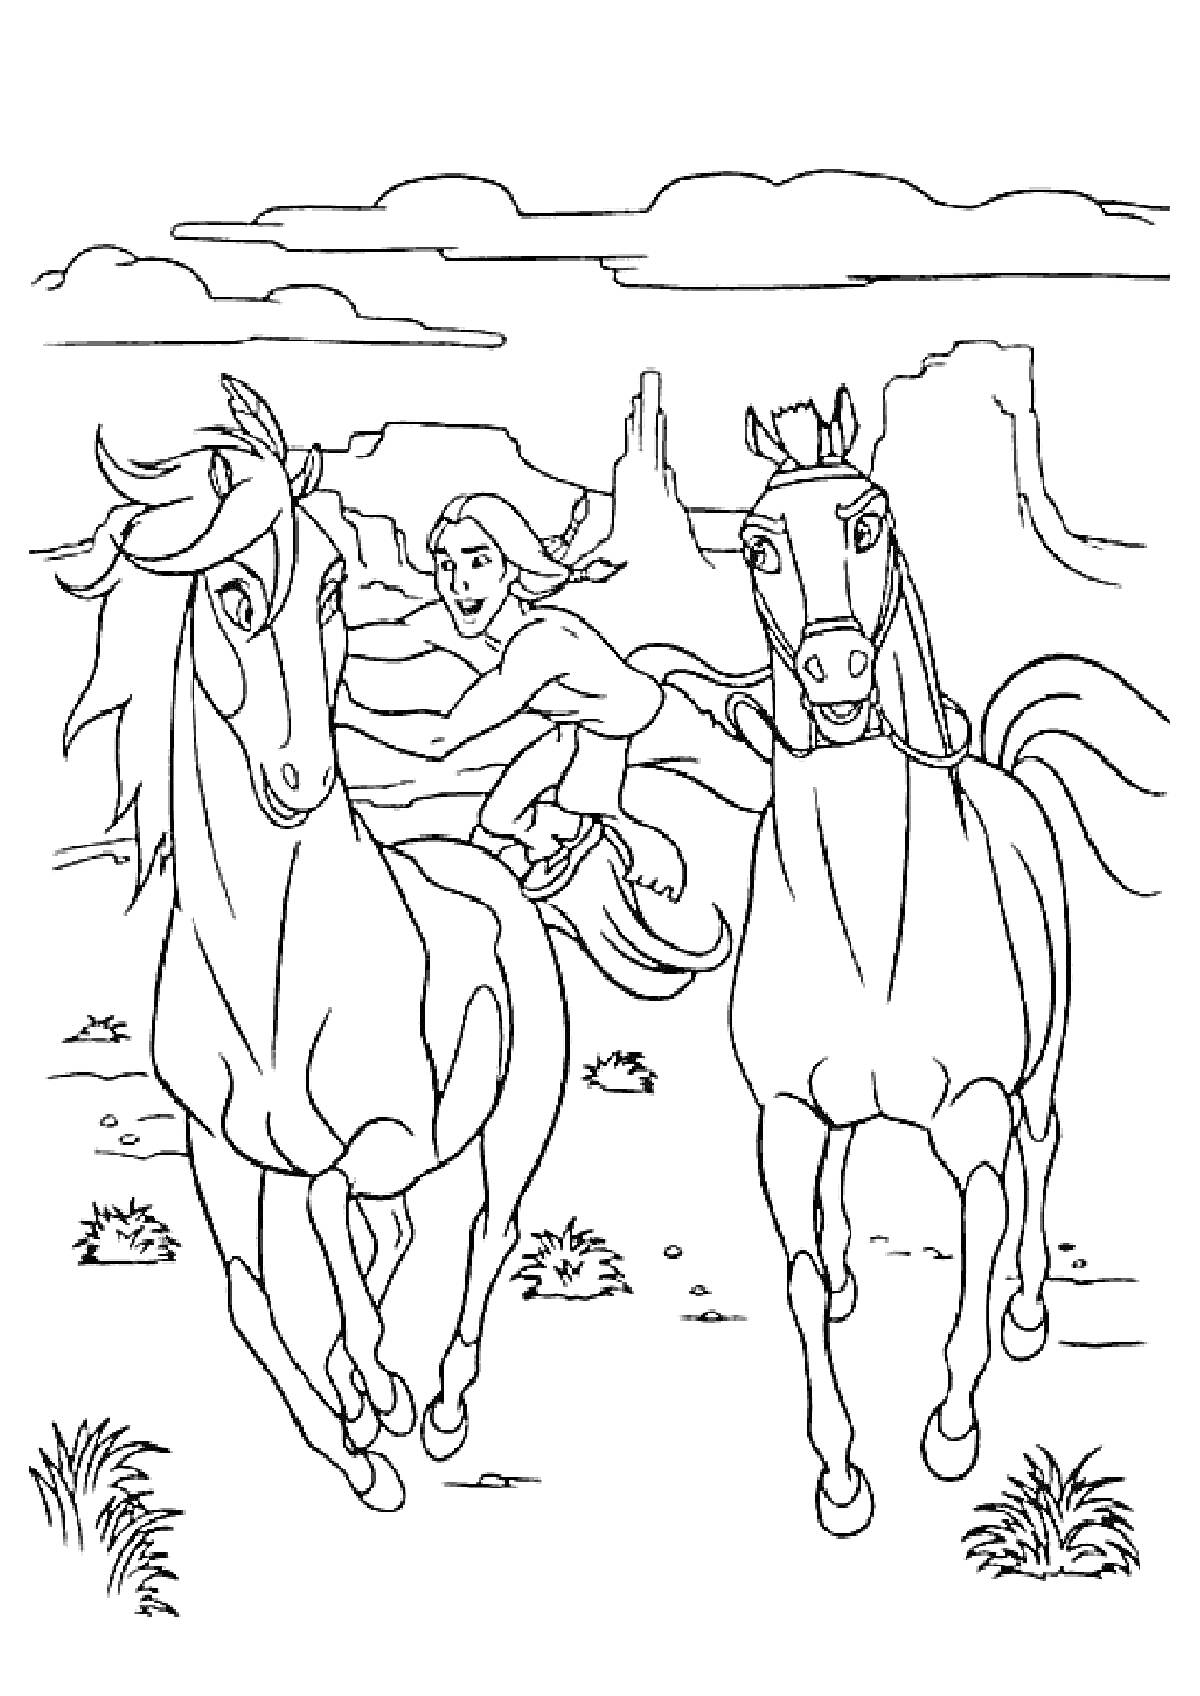 Раскраска Всадник на лошади и еще одна лошадь на фоне пустынного пейзажа с горами и облаками